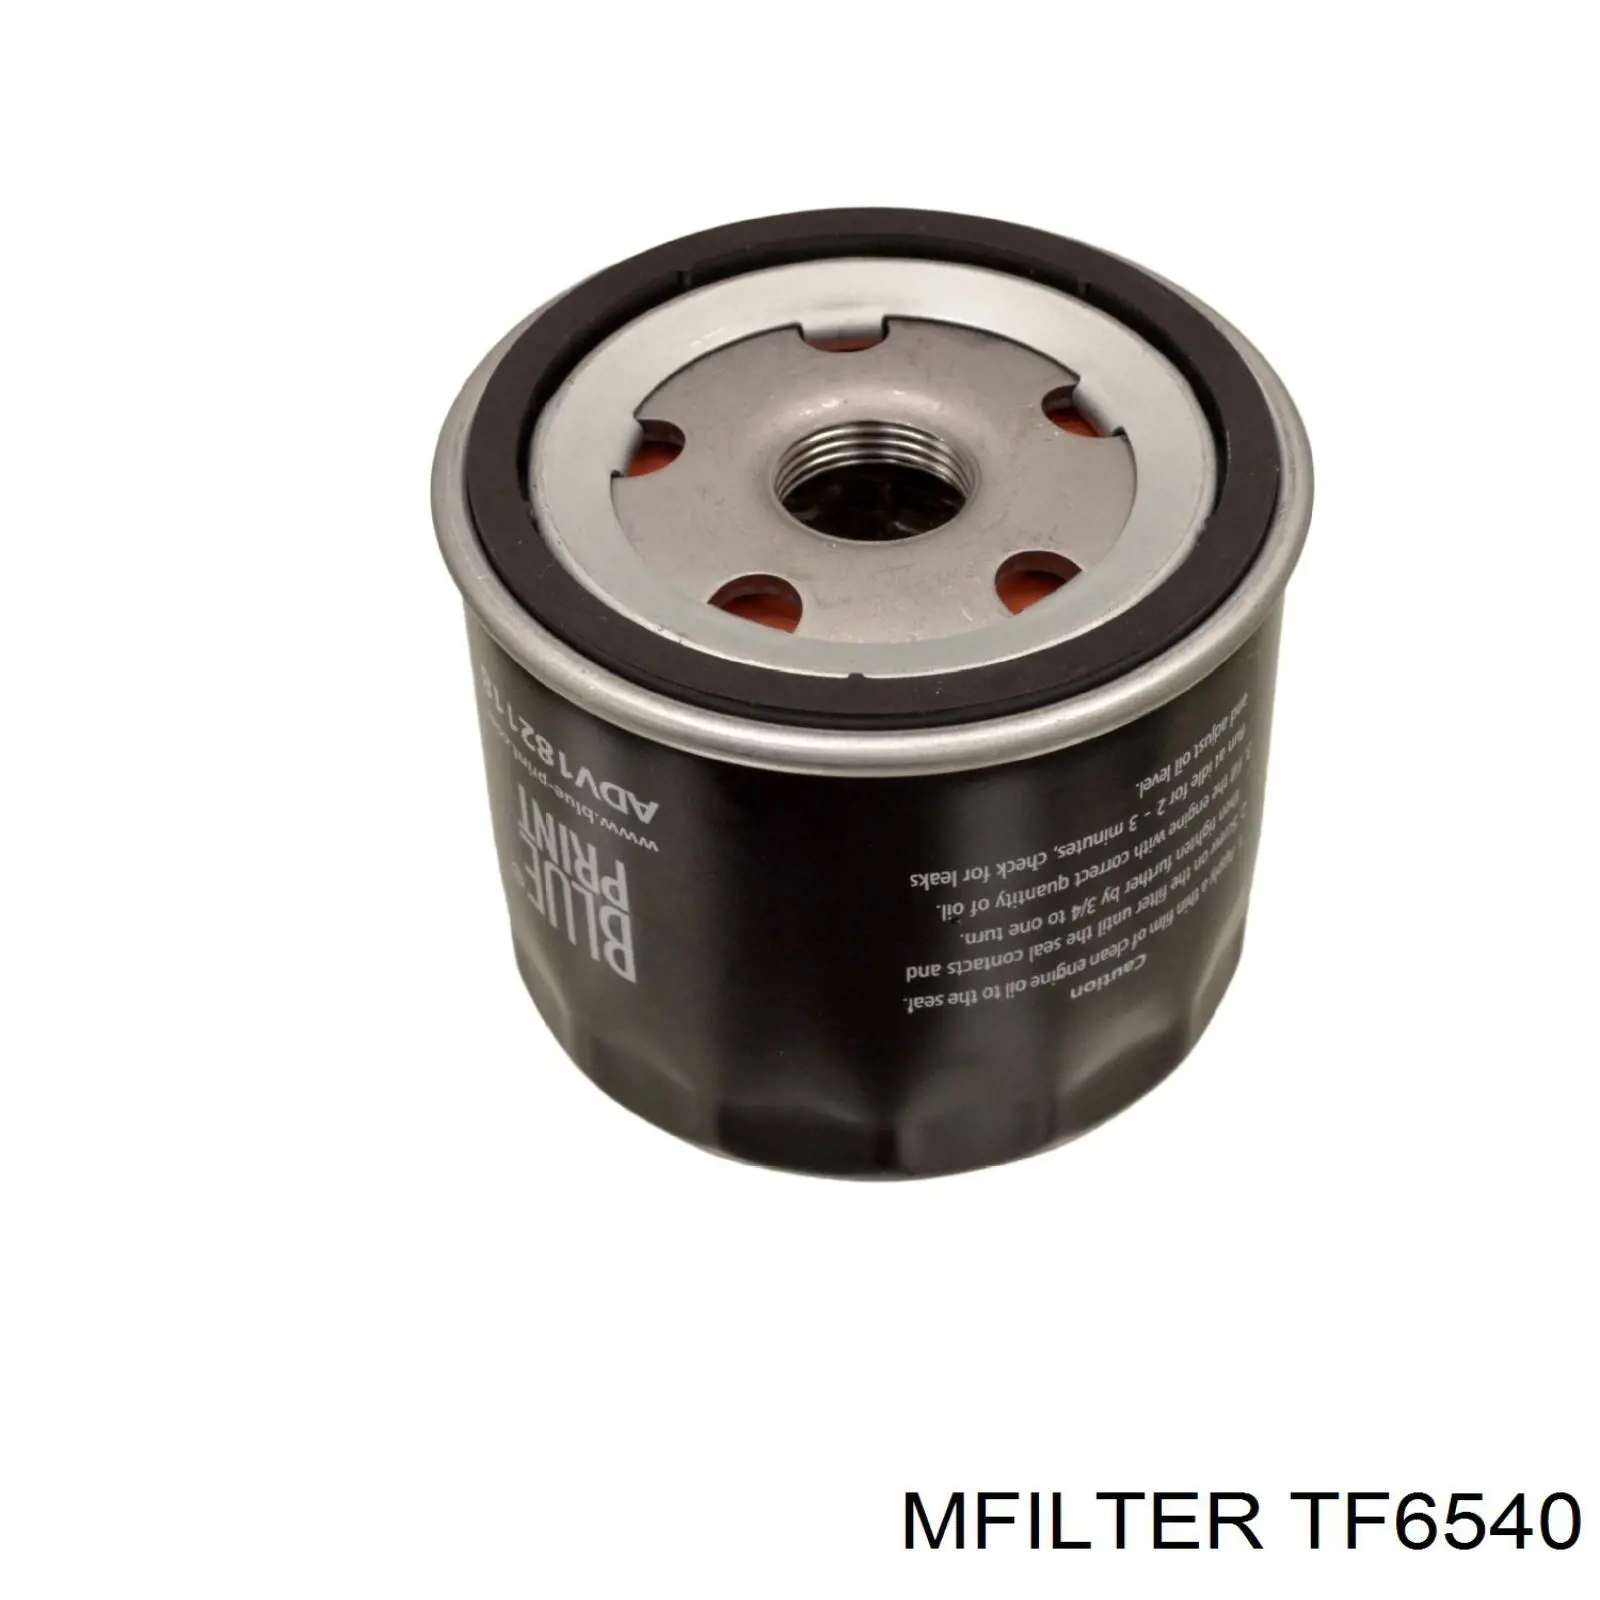 TF6540 Mfilter filtro de aceite